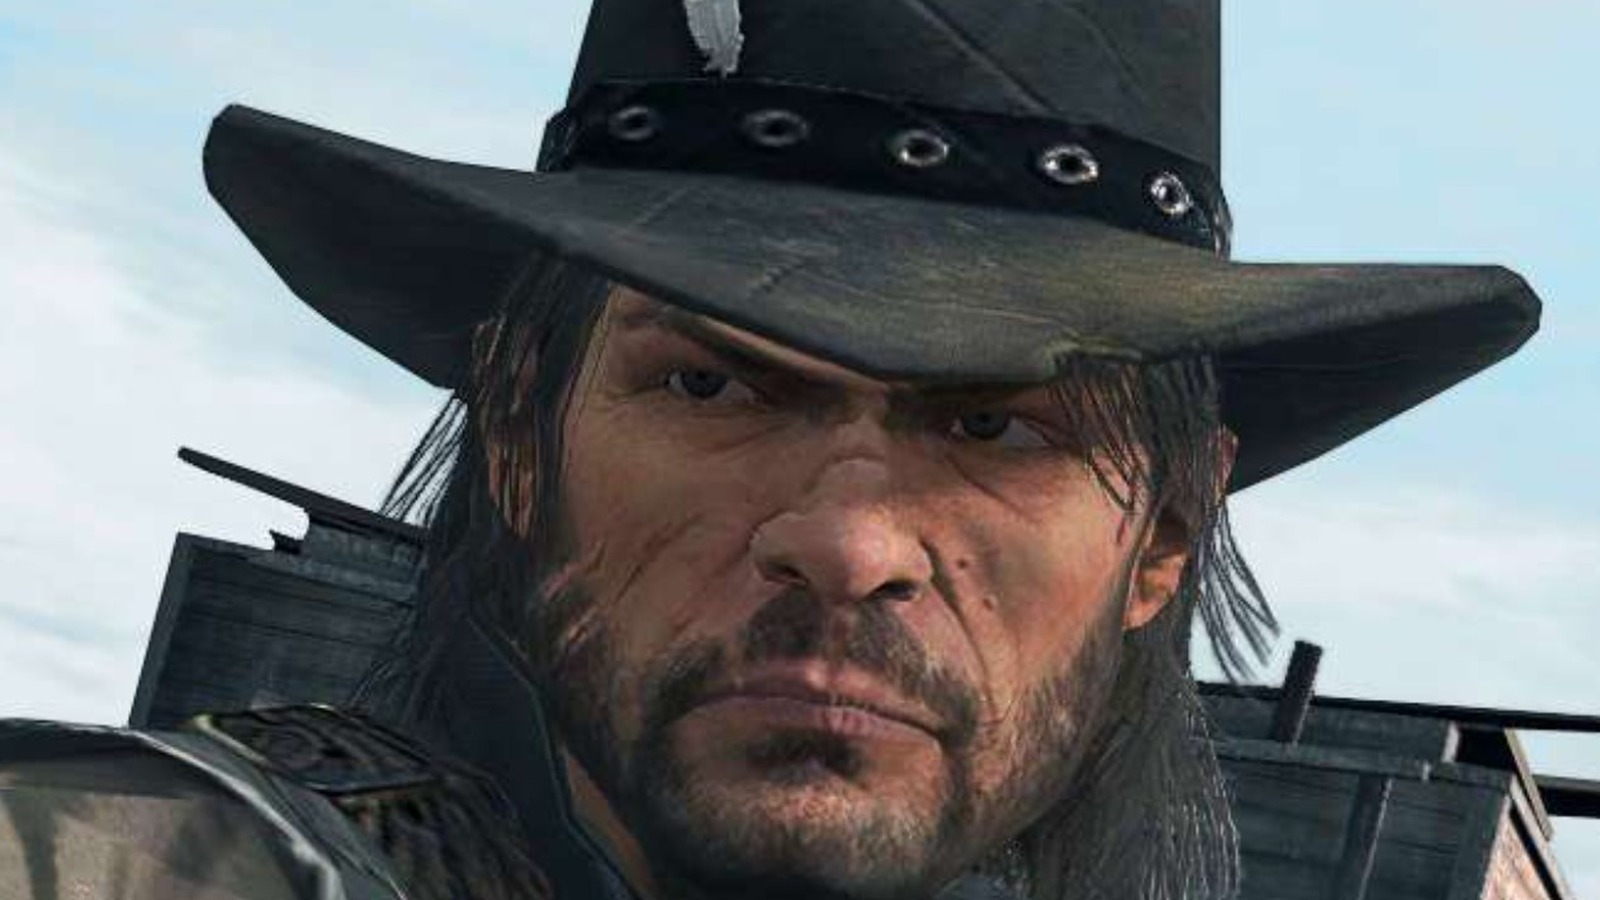 Red Dead Redemption Remaster Rumor Unpacked